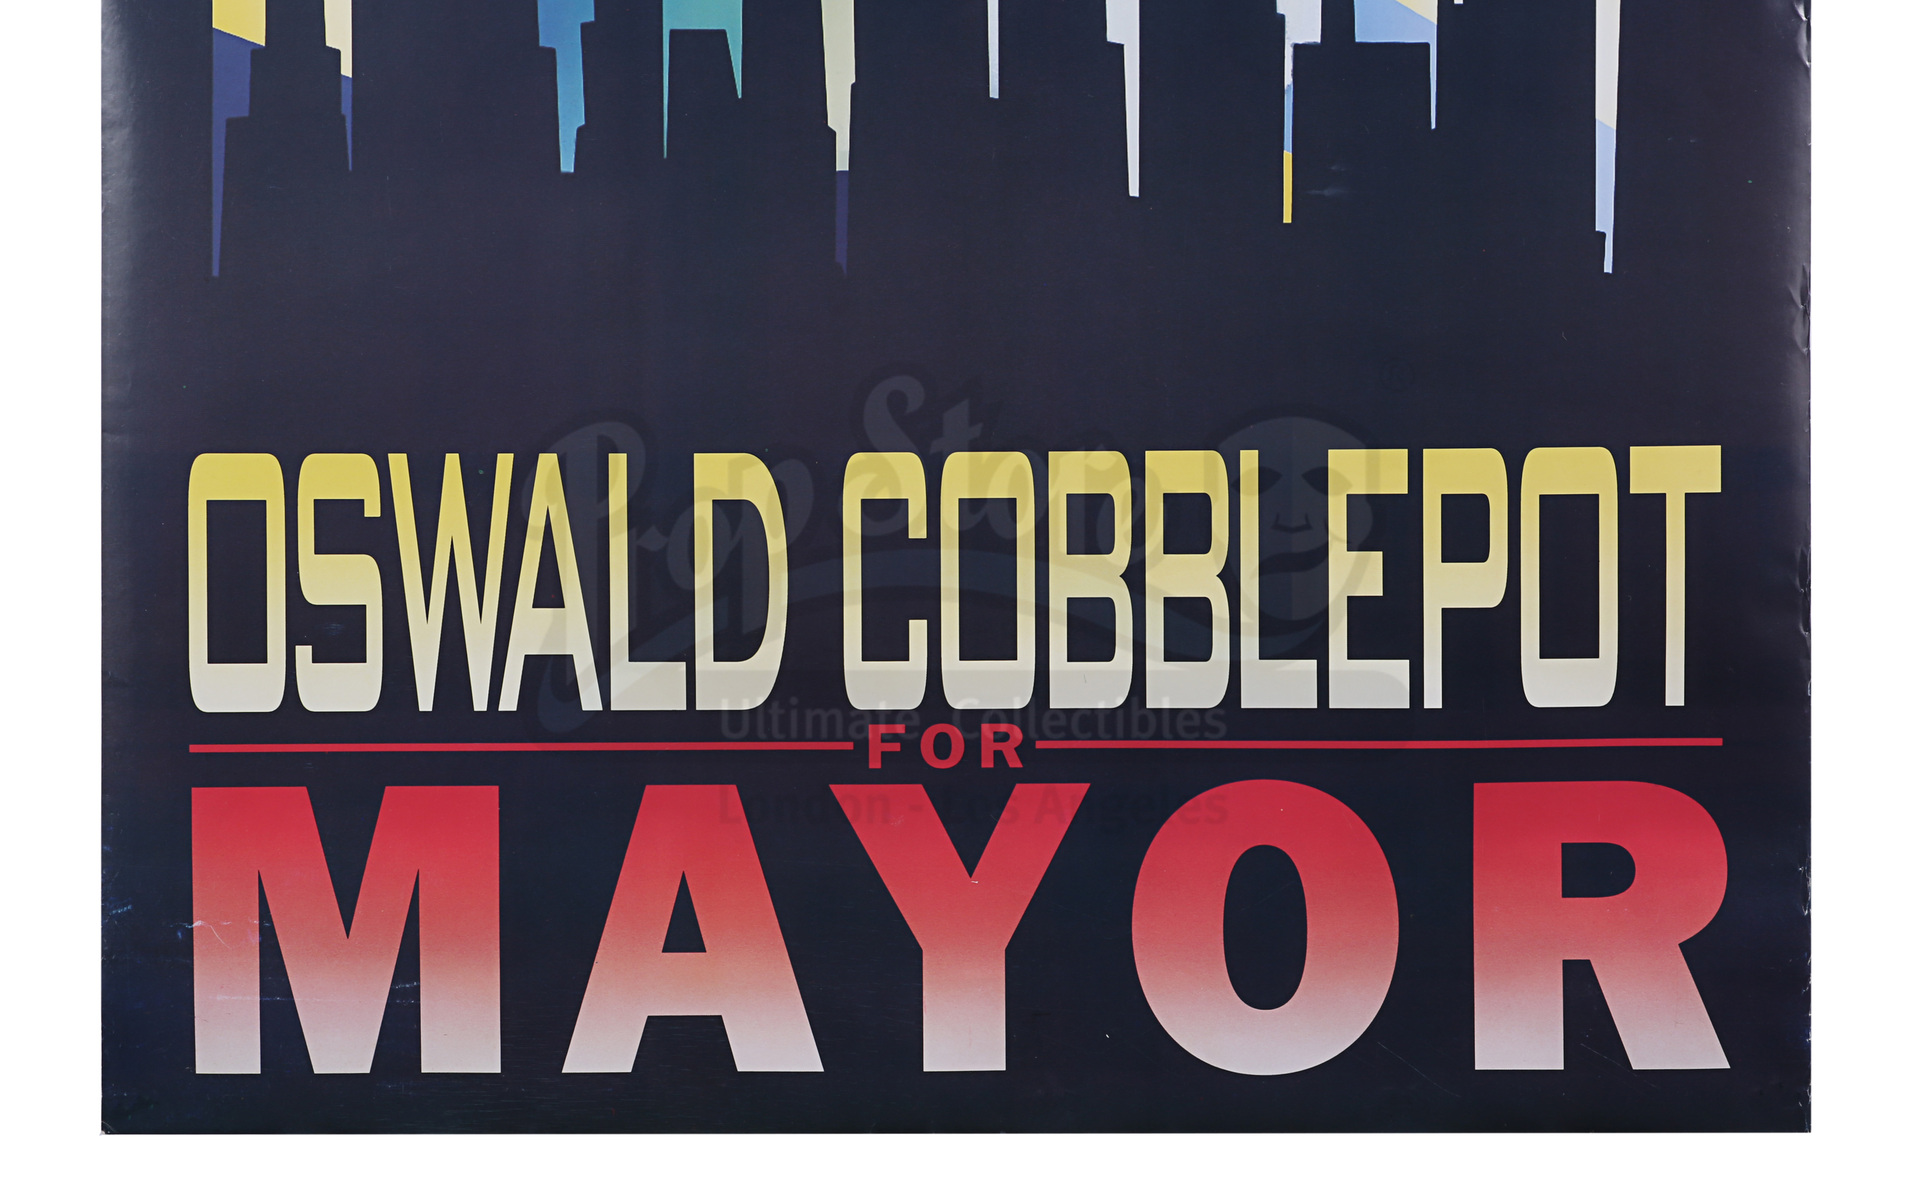 BATMAN RETURNS (1992) - Oswald Cobblepot For Mayor Election Poster - Image 3 of 7